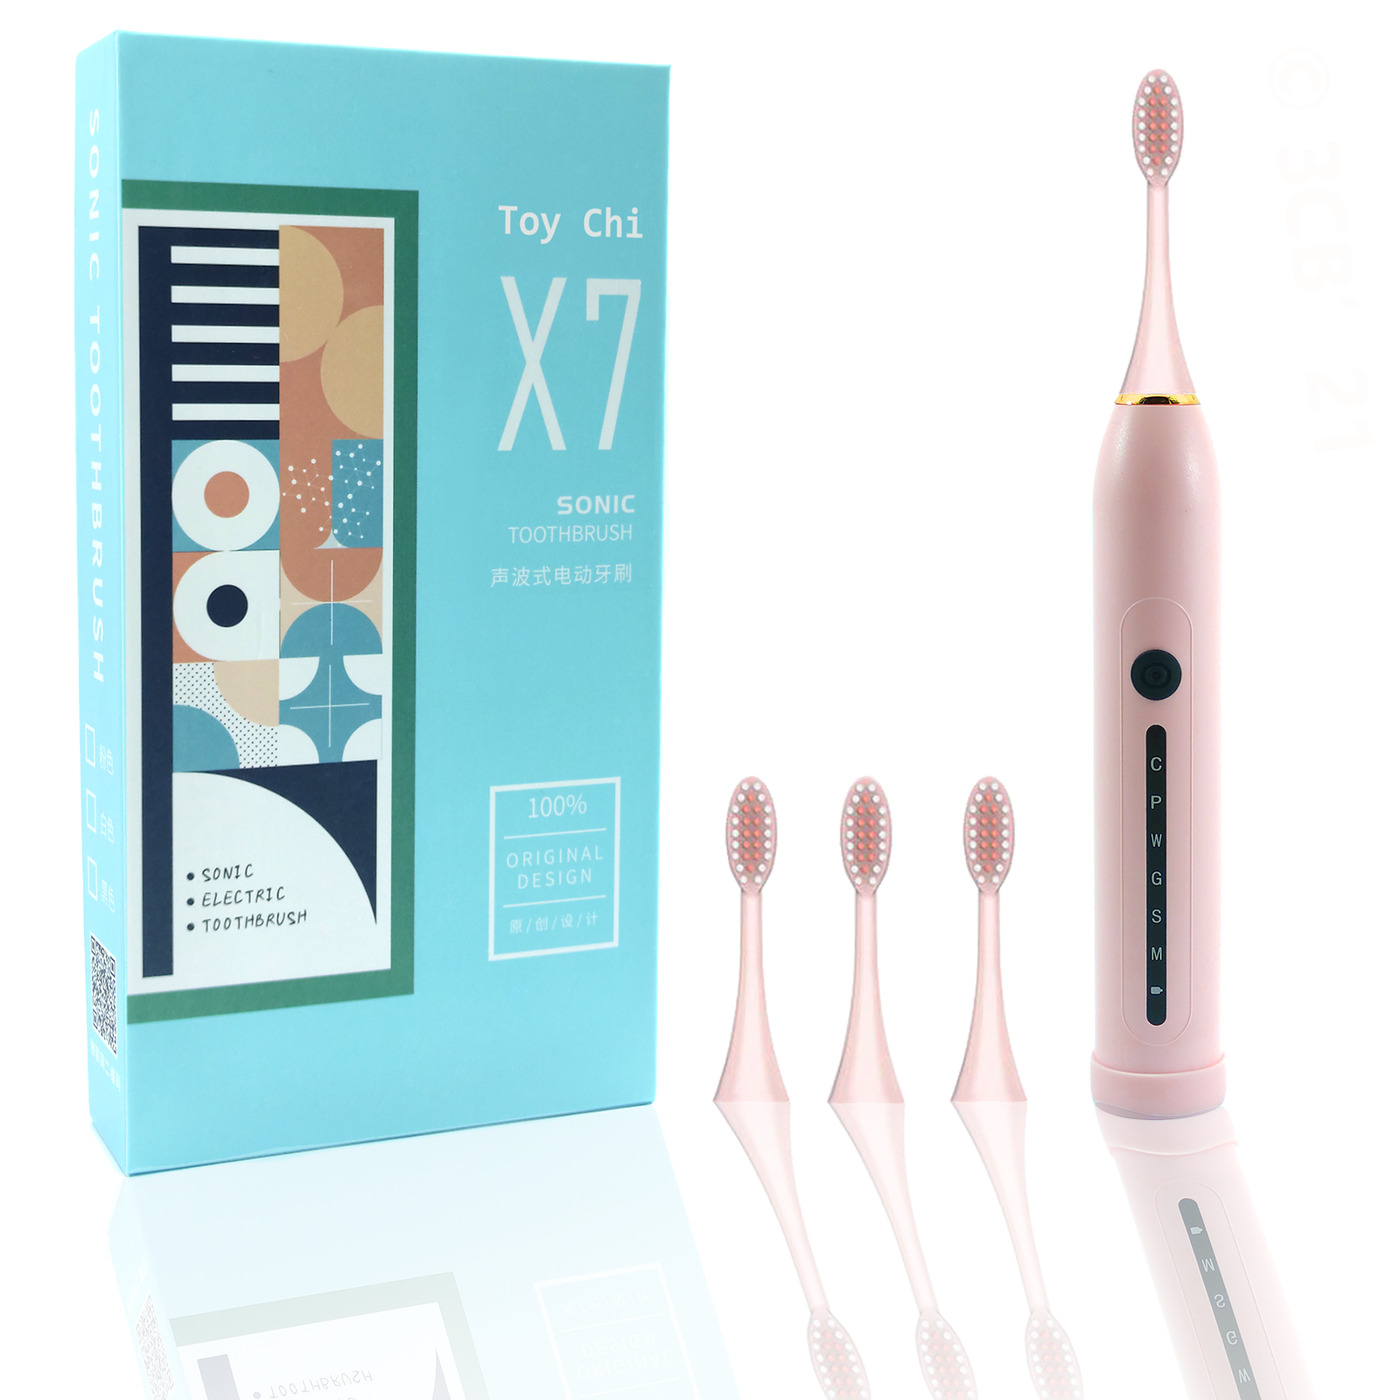 Электрическая зубная щетка ультразвуковая Toy Chi X7 SONIC Toothbrush, розовая электрическая зубная щетка soocas weeks x3u в комплекте 2 доп насадки розовая